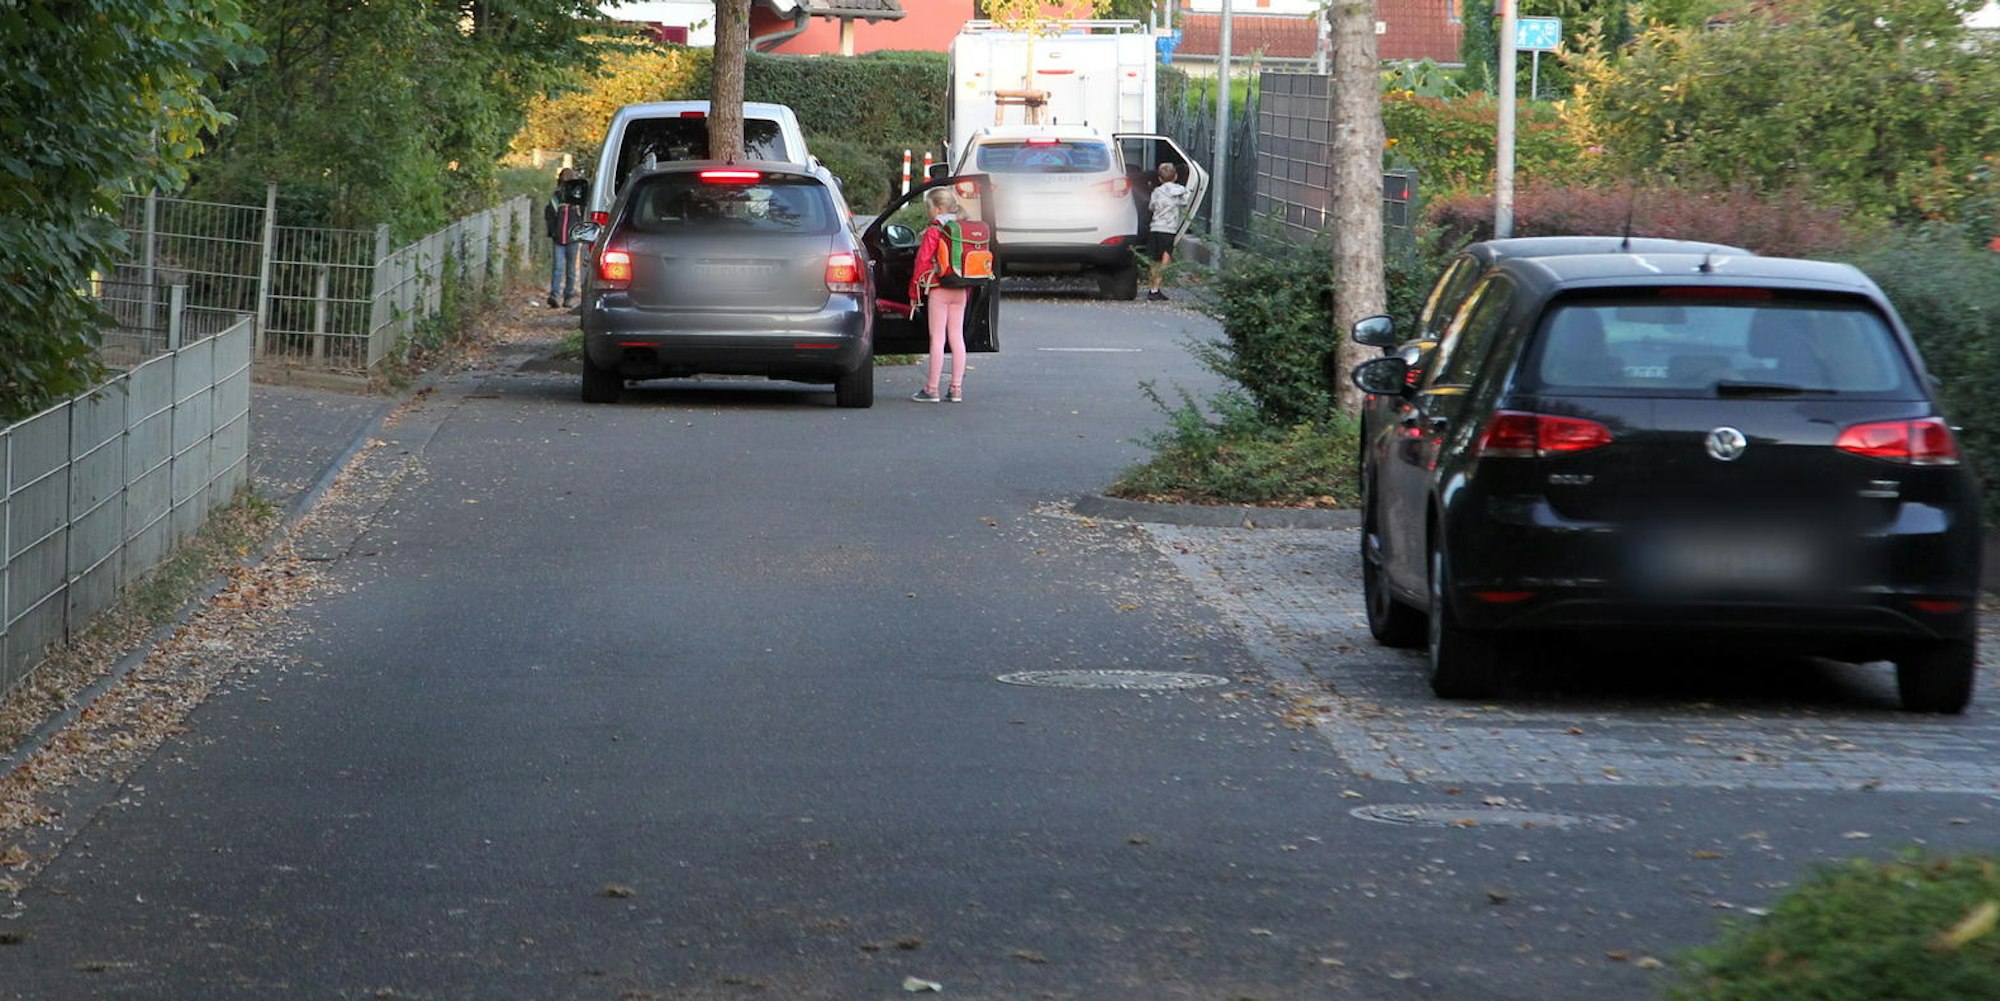 Möglichst dicht vor der Grundschule halten die Elterntaxis – auch auf der falschen Straßenseite.